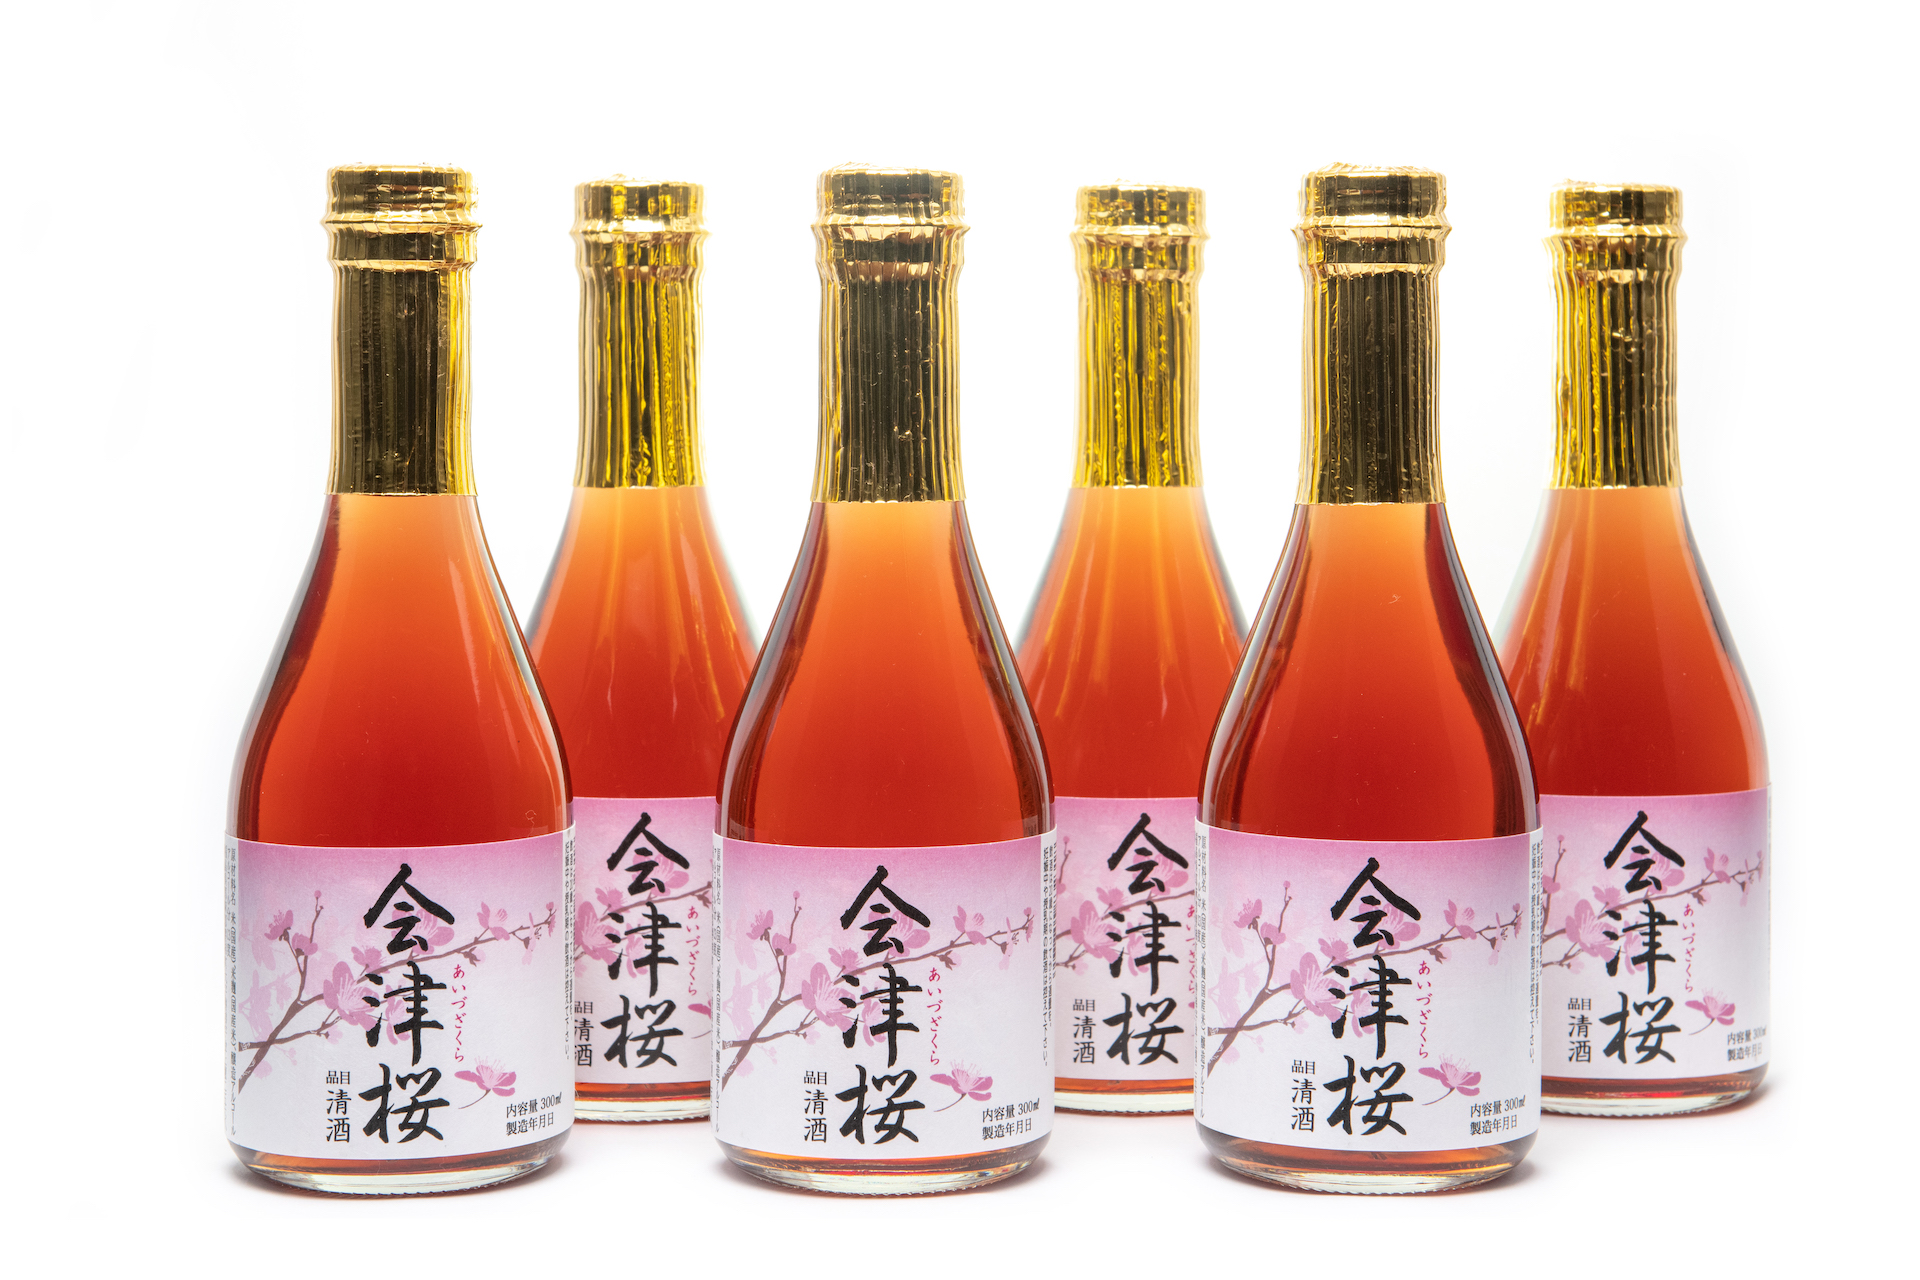 「赤い酒 会津桜」は紅麹を使用しておりません